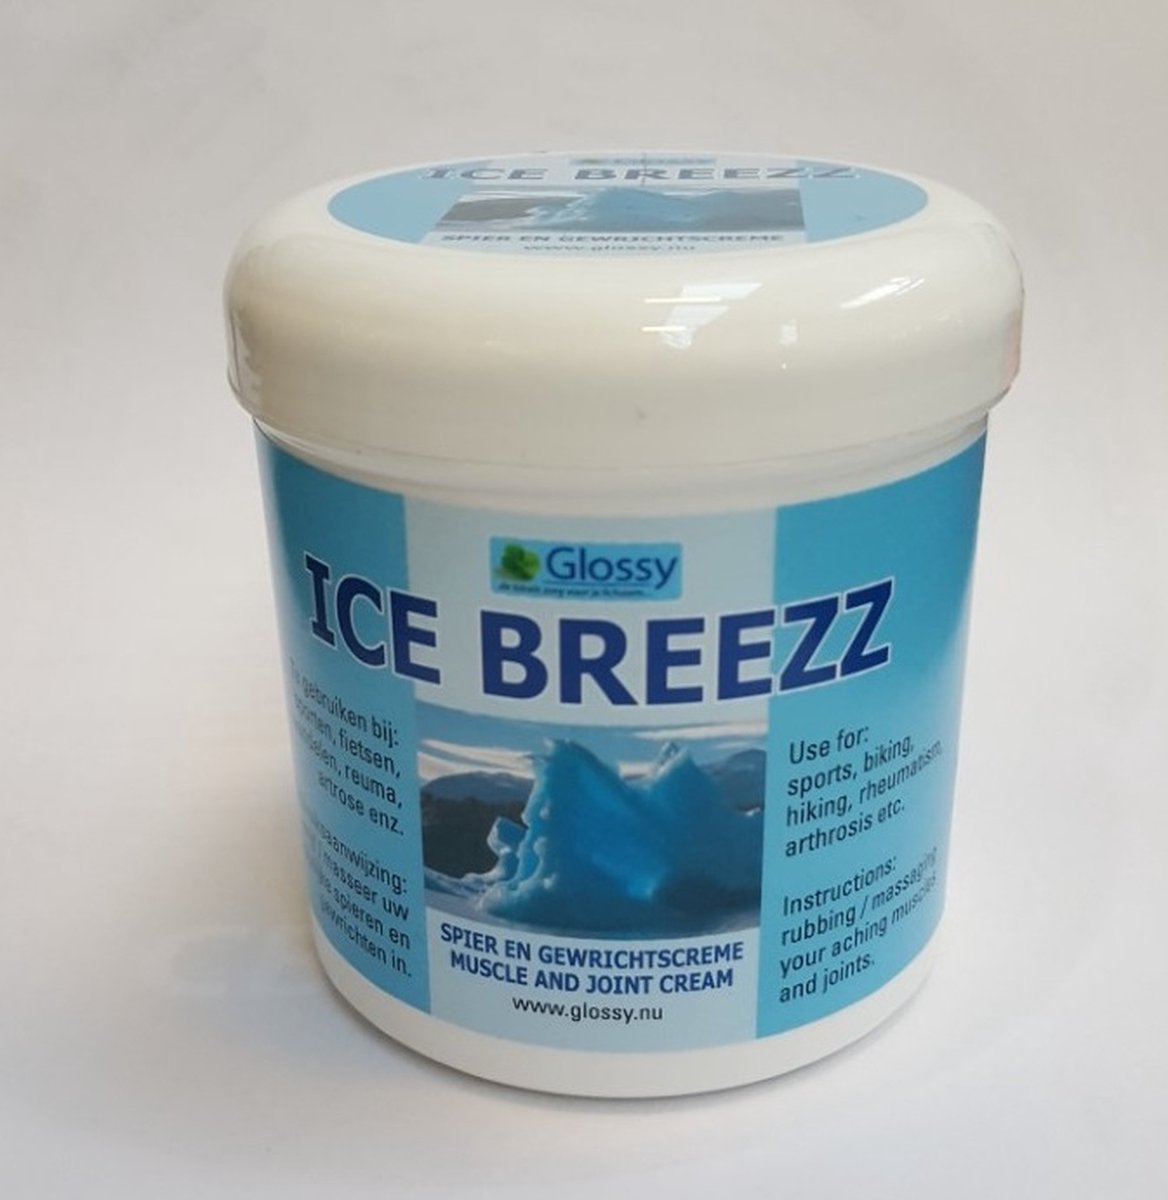 IceBreezz